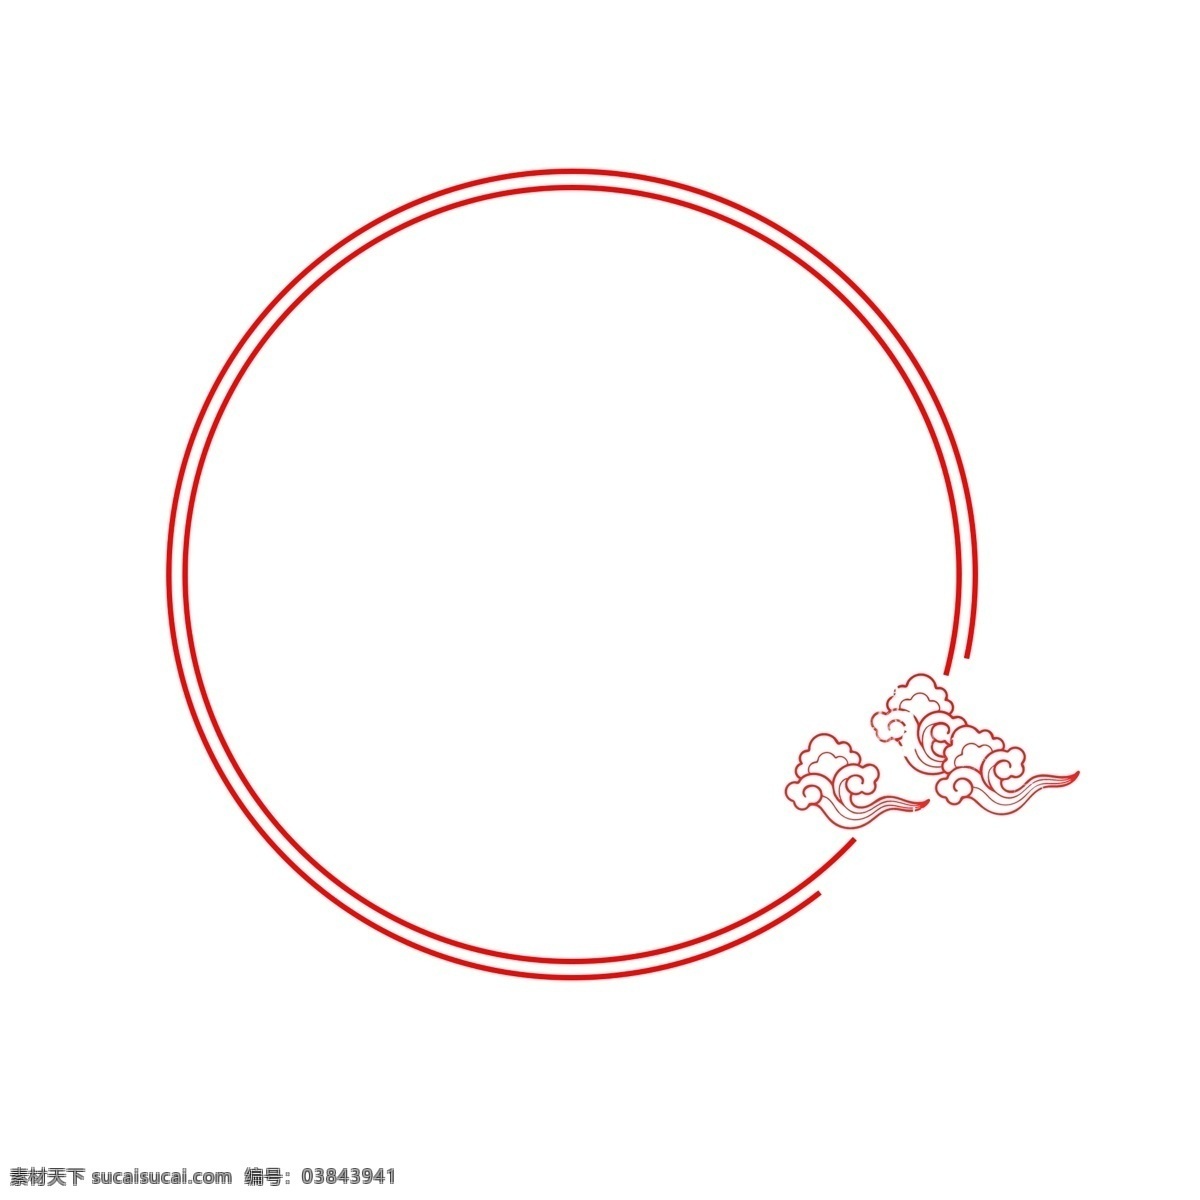 手绘 红色 中 国风 线条 边框 卡通手绘 水彩 中国风 小清新 圆圈 圆形 几何图形 祥云 云朵 装饰图形